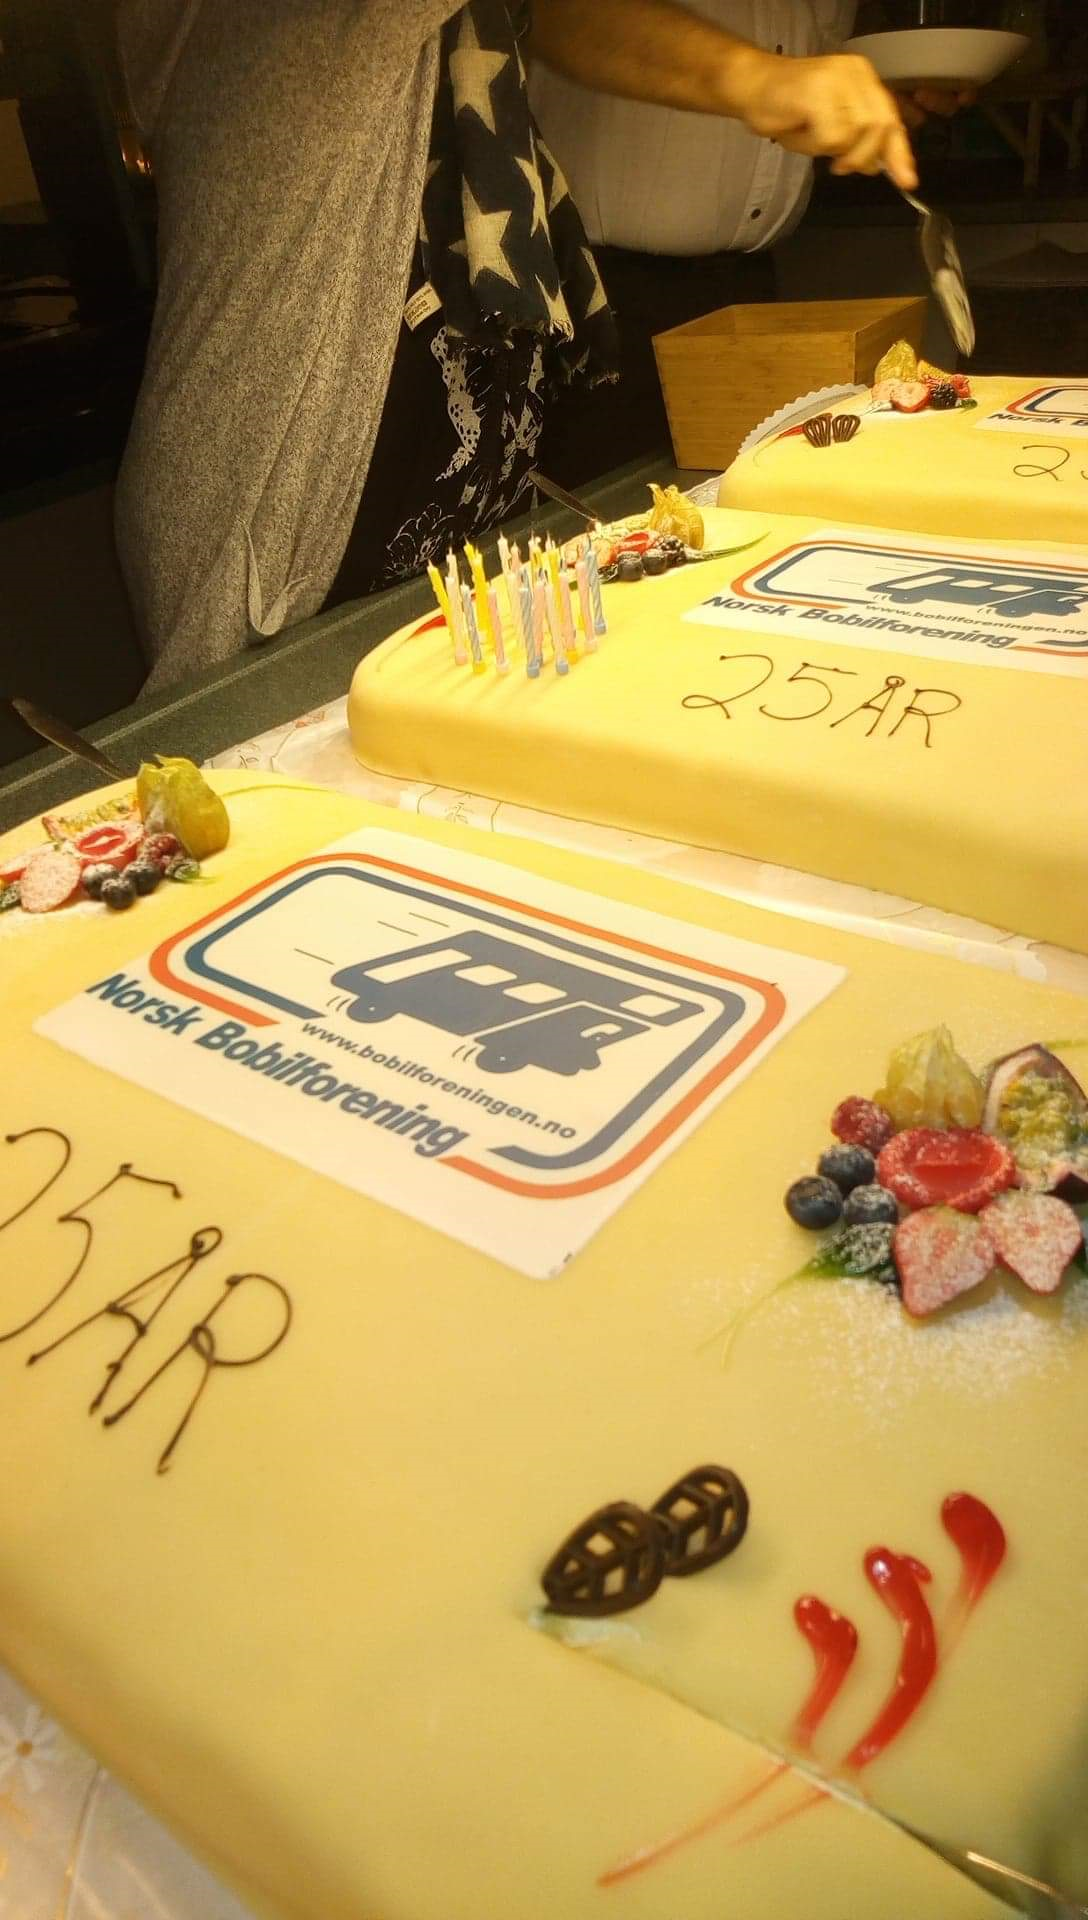 25 års jubileums kake Region sør.png